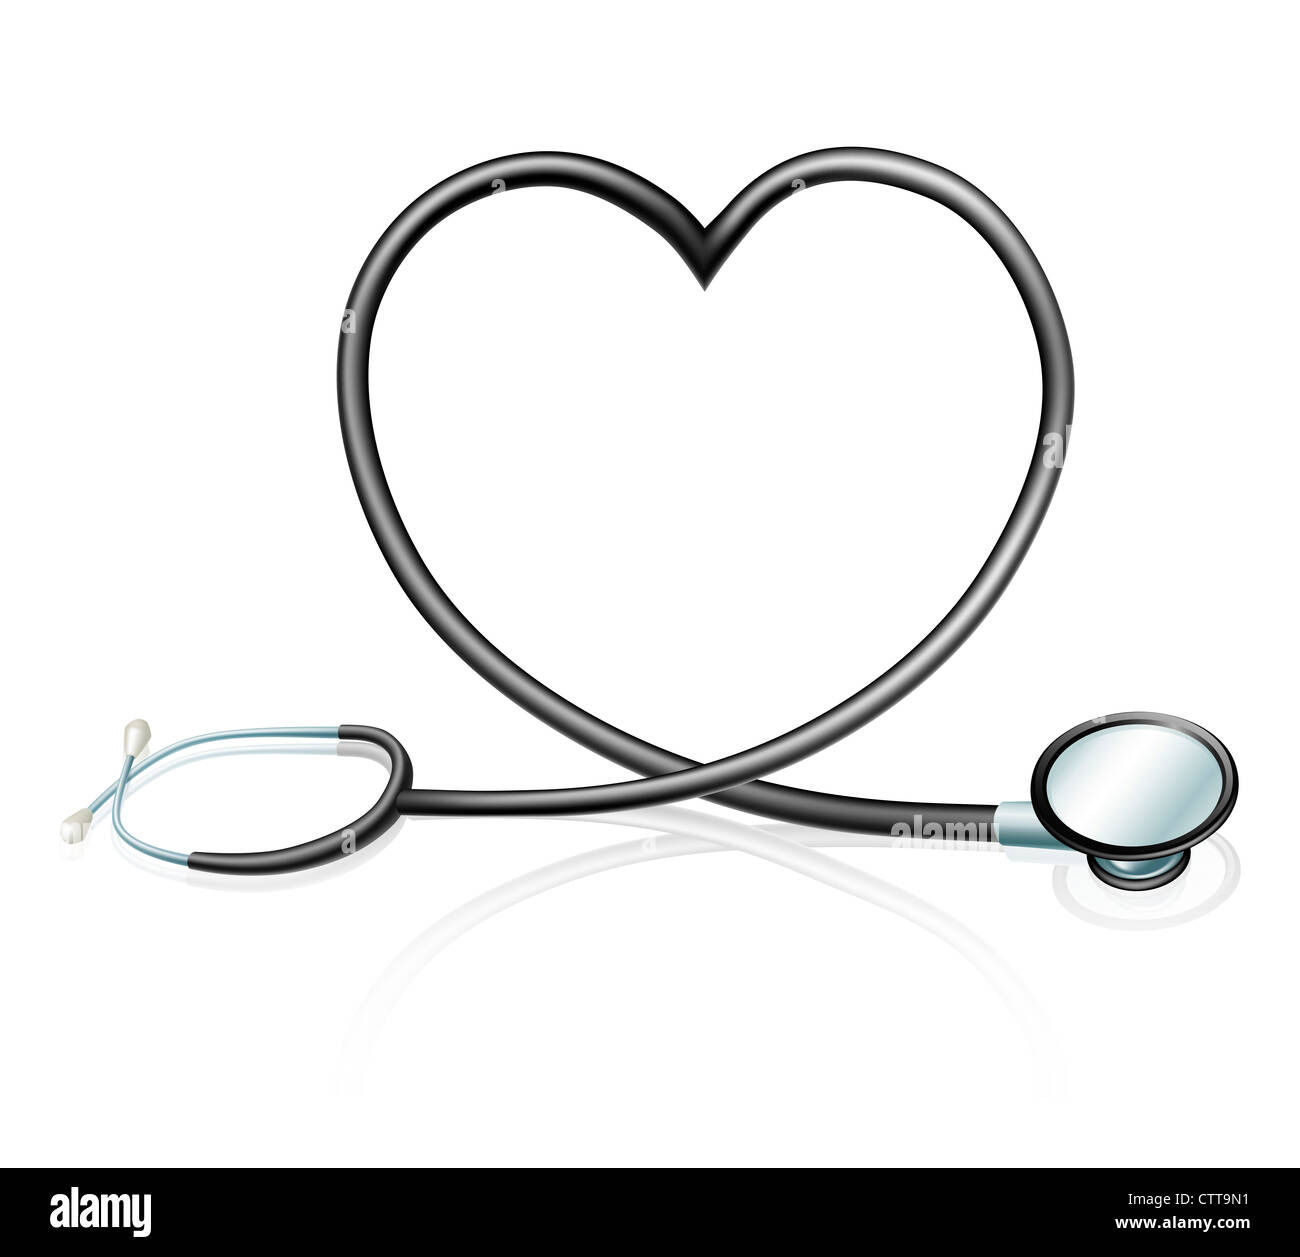 Herz-Health-Konzept, ein Stethoskop, bilden eine Herzform Stockfoto